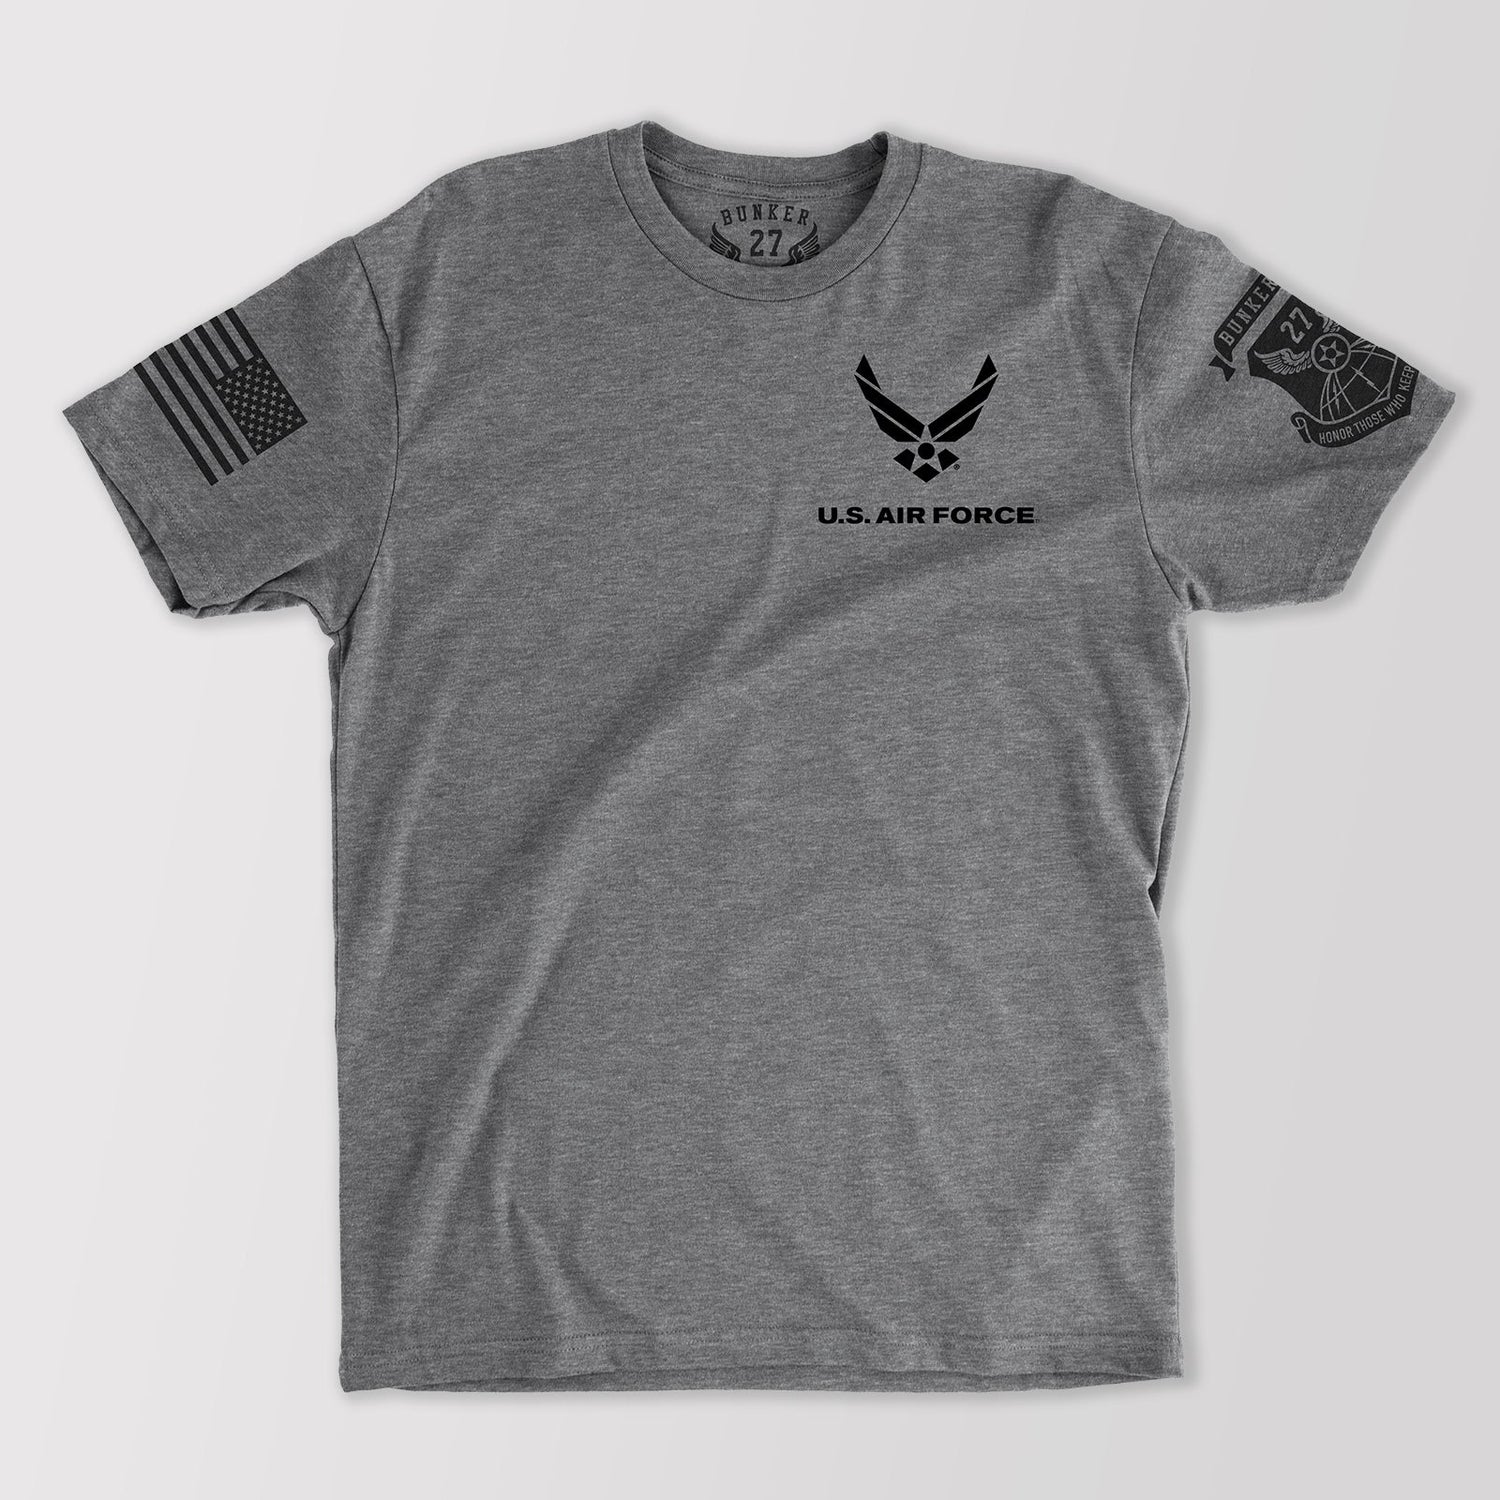 Official U.S. Air Force Logo T-Shirt, Bunker 27